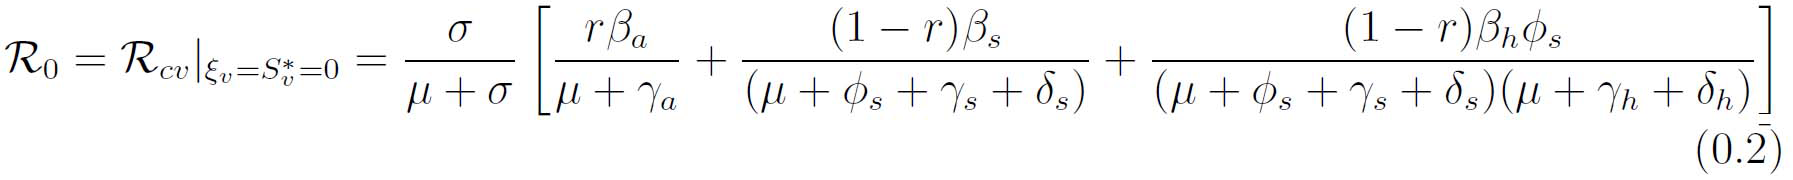 Ecuación de R0 del modelo COVID